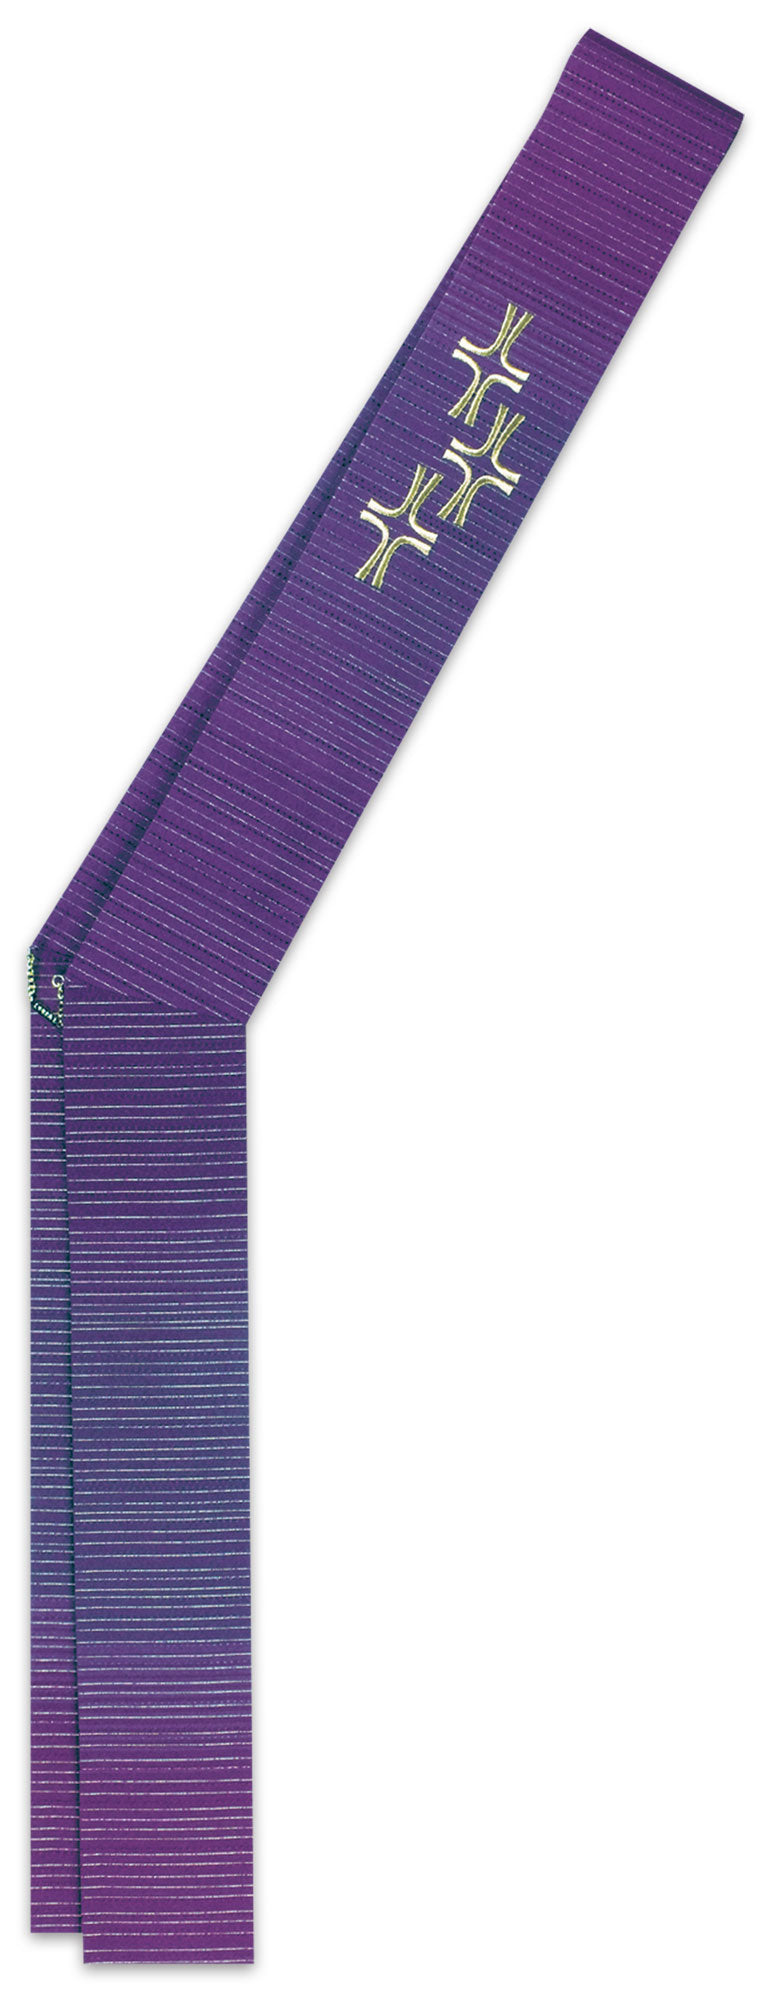 deacon-stole-34-3450-purple.jpg